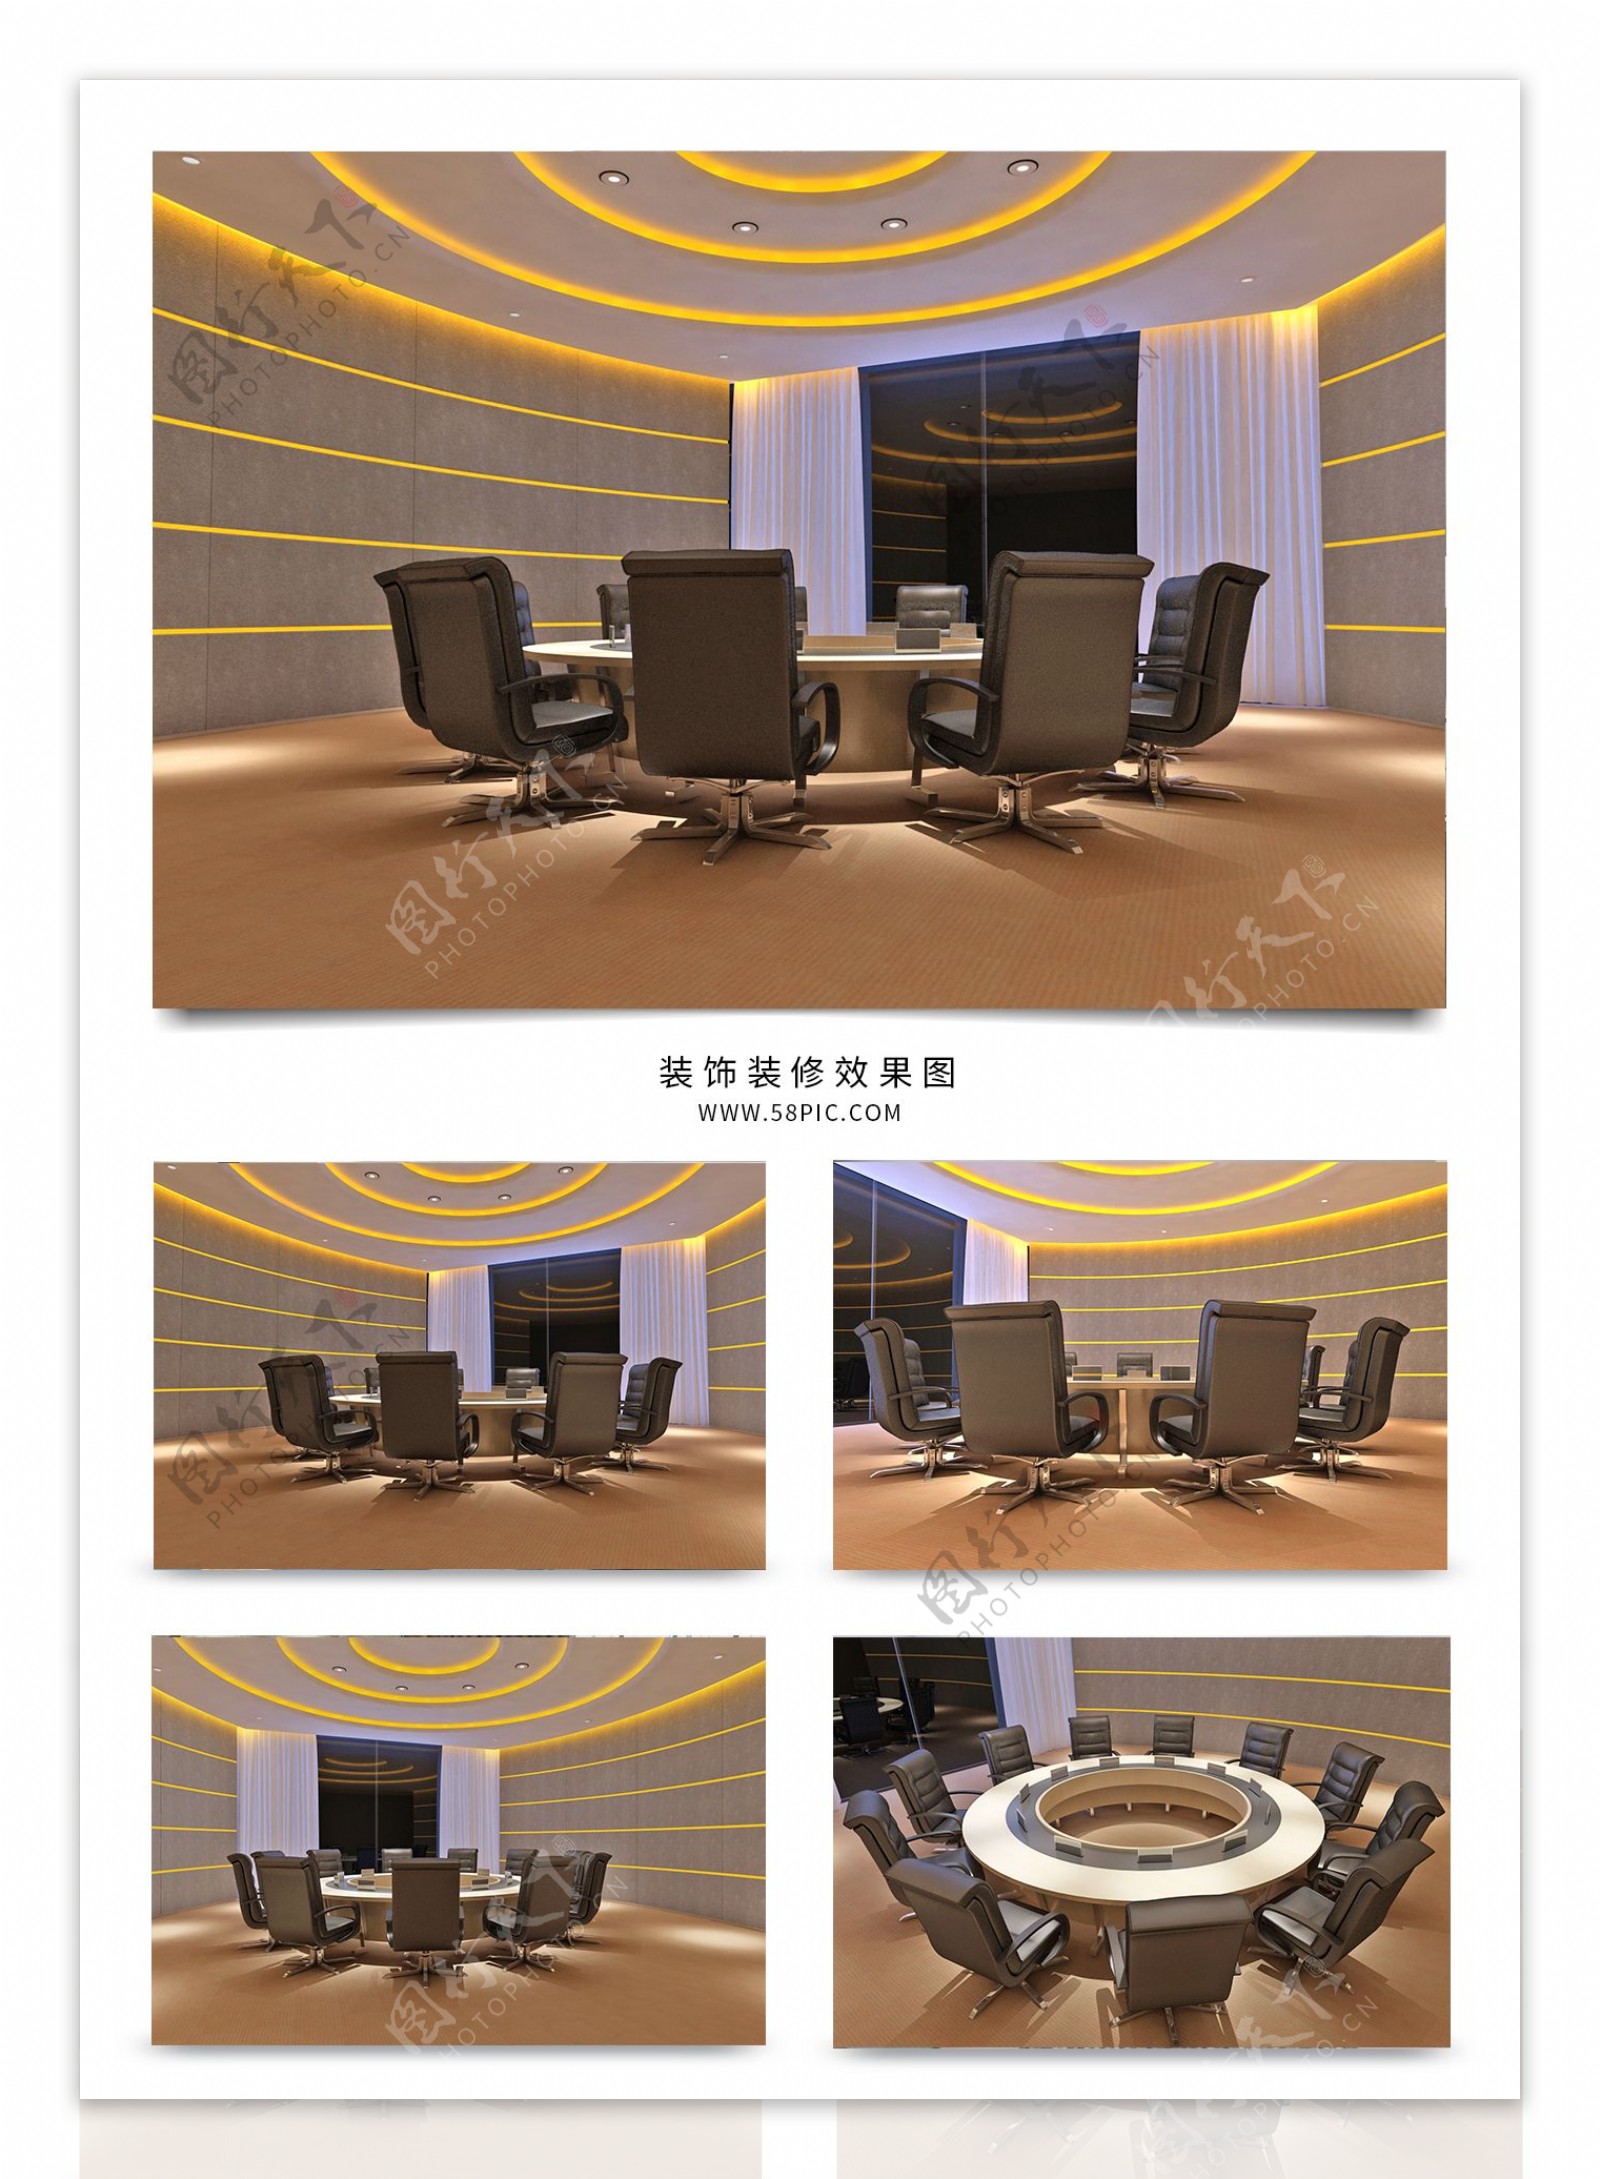 现代风格经理办公室会议空间设计效果图